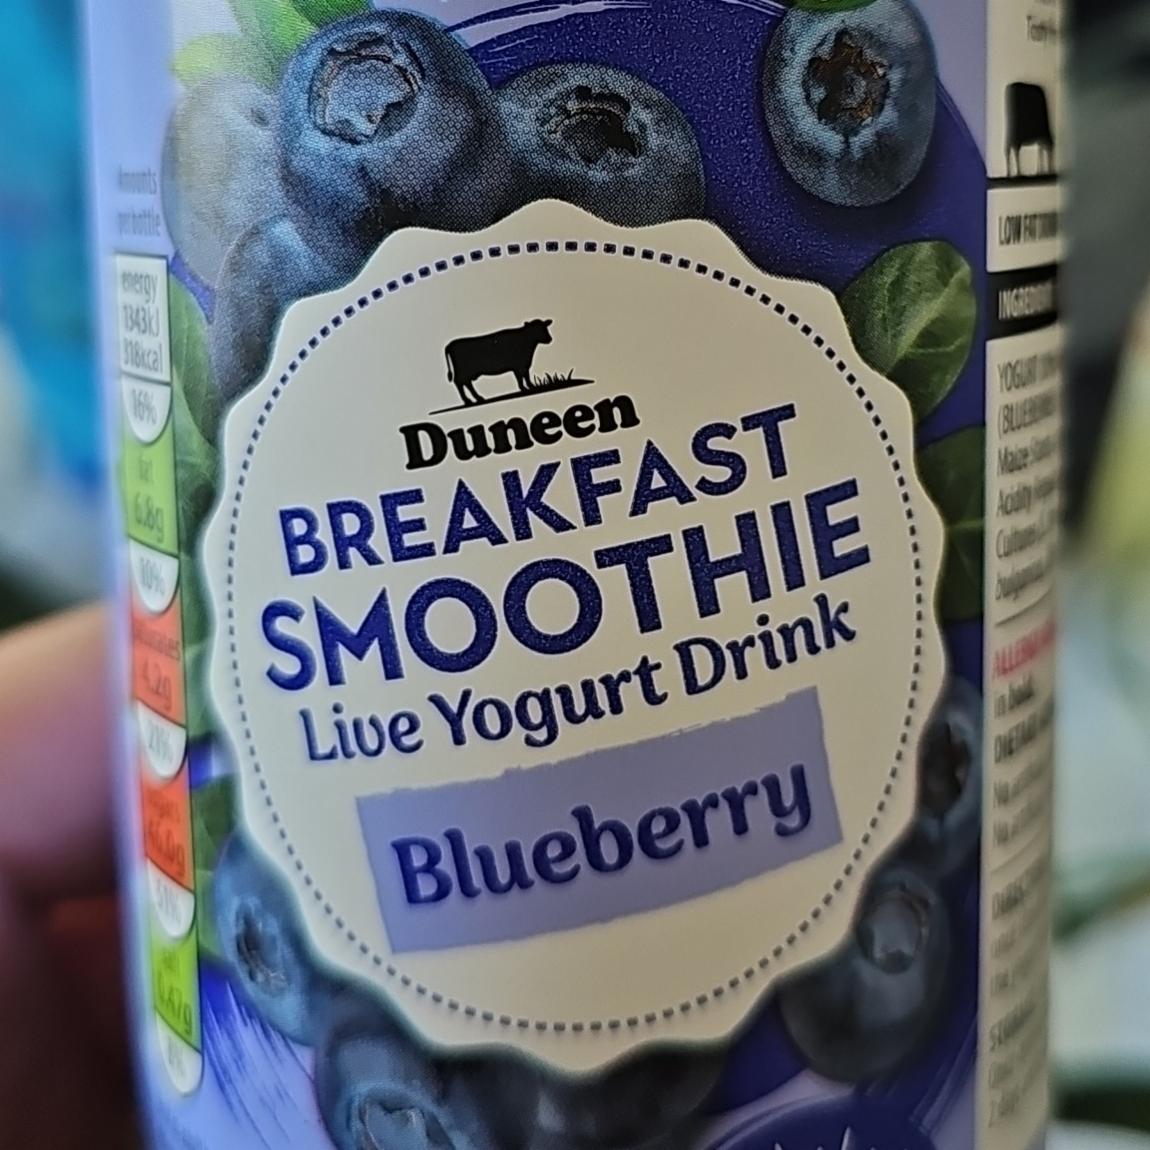 Fotografie - Breakfast smoothie Blueberry Duneen